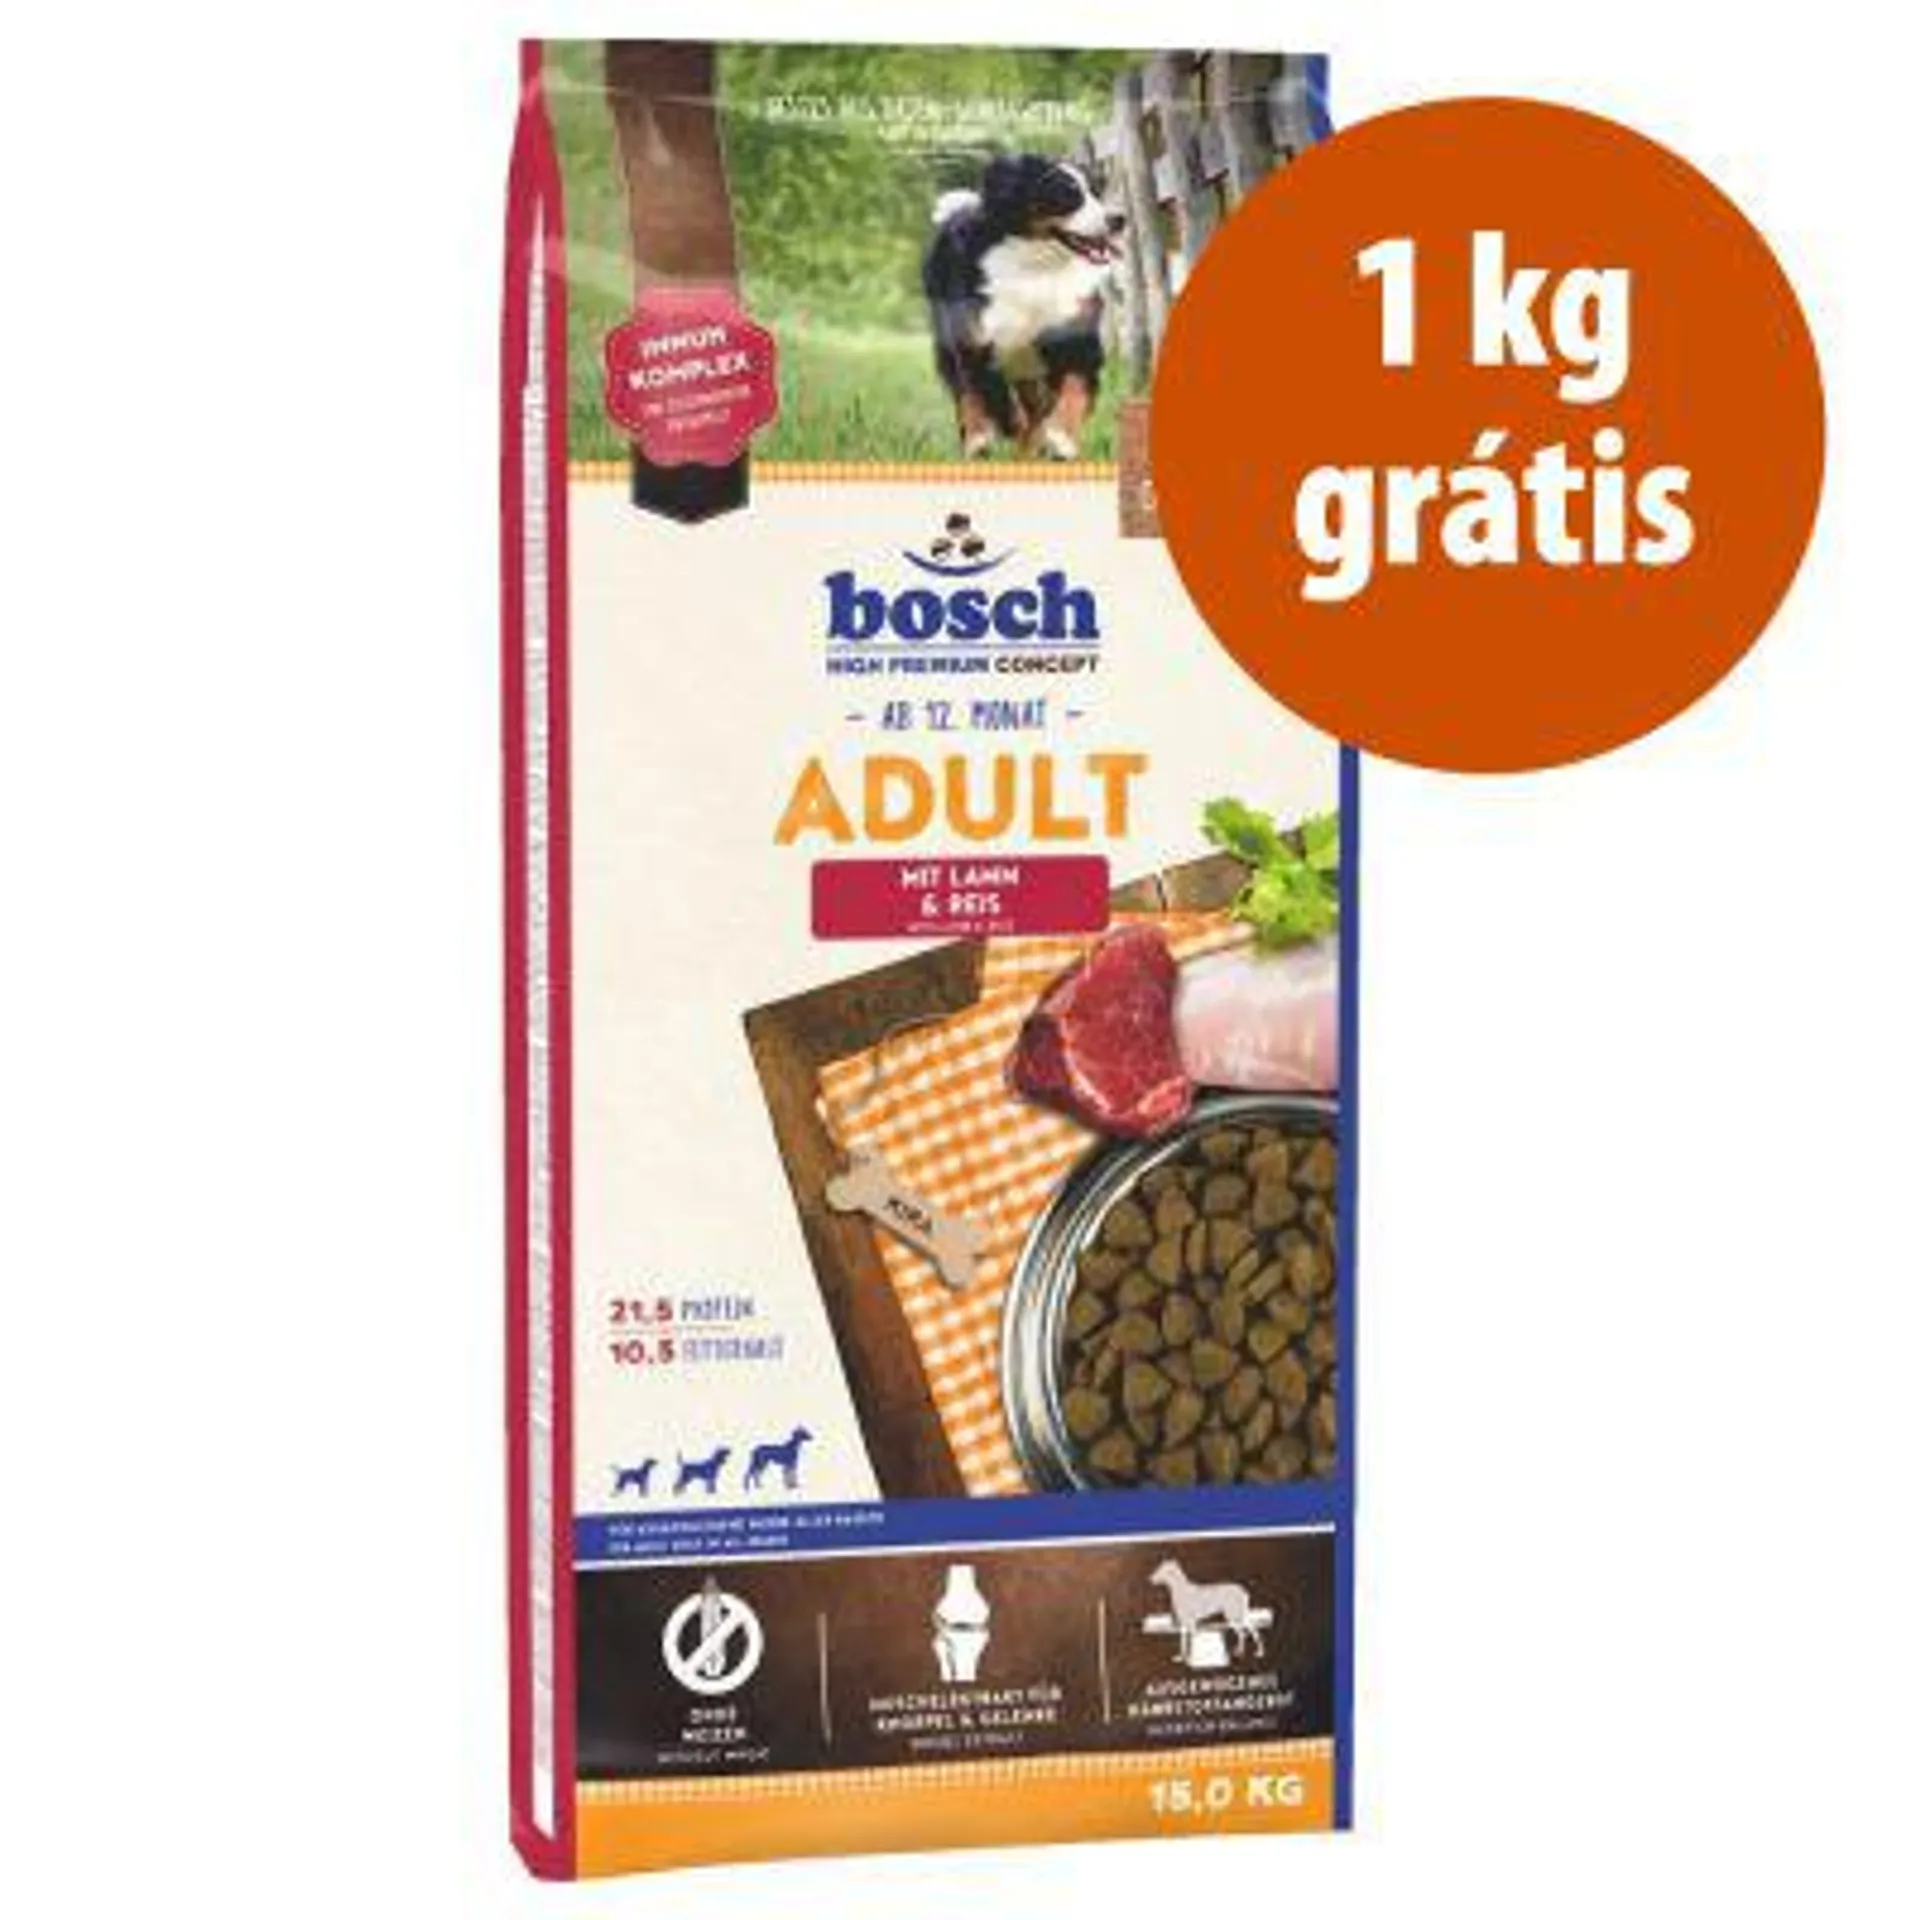 Bosch 15 kg em promoção: 14 kg + 1 kg grátis!